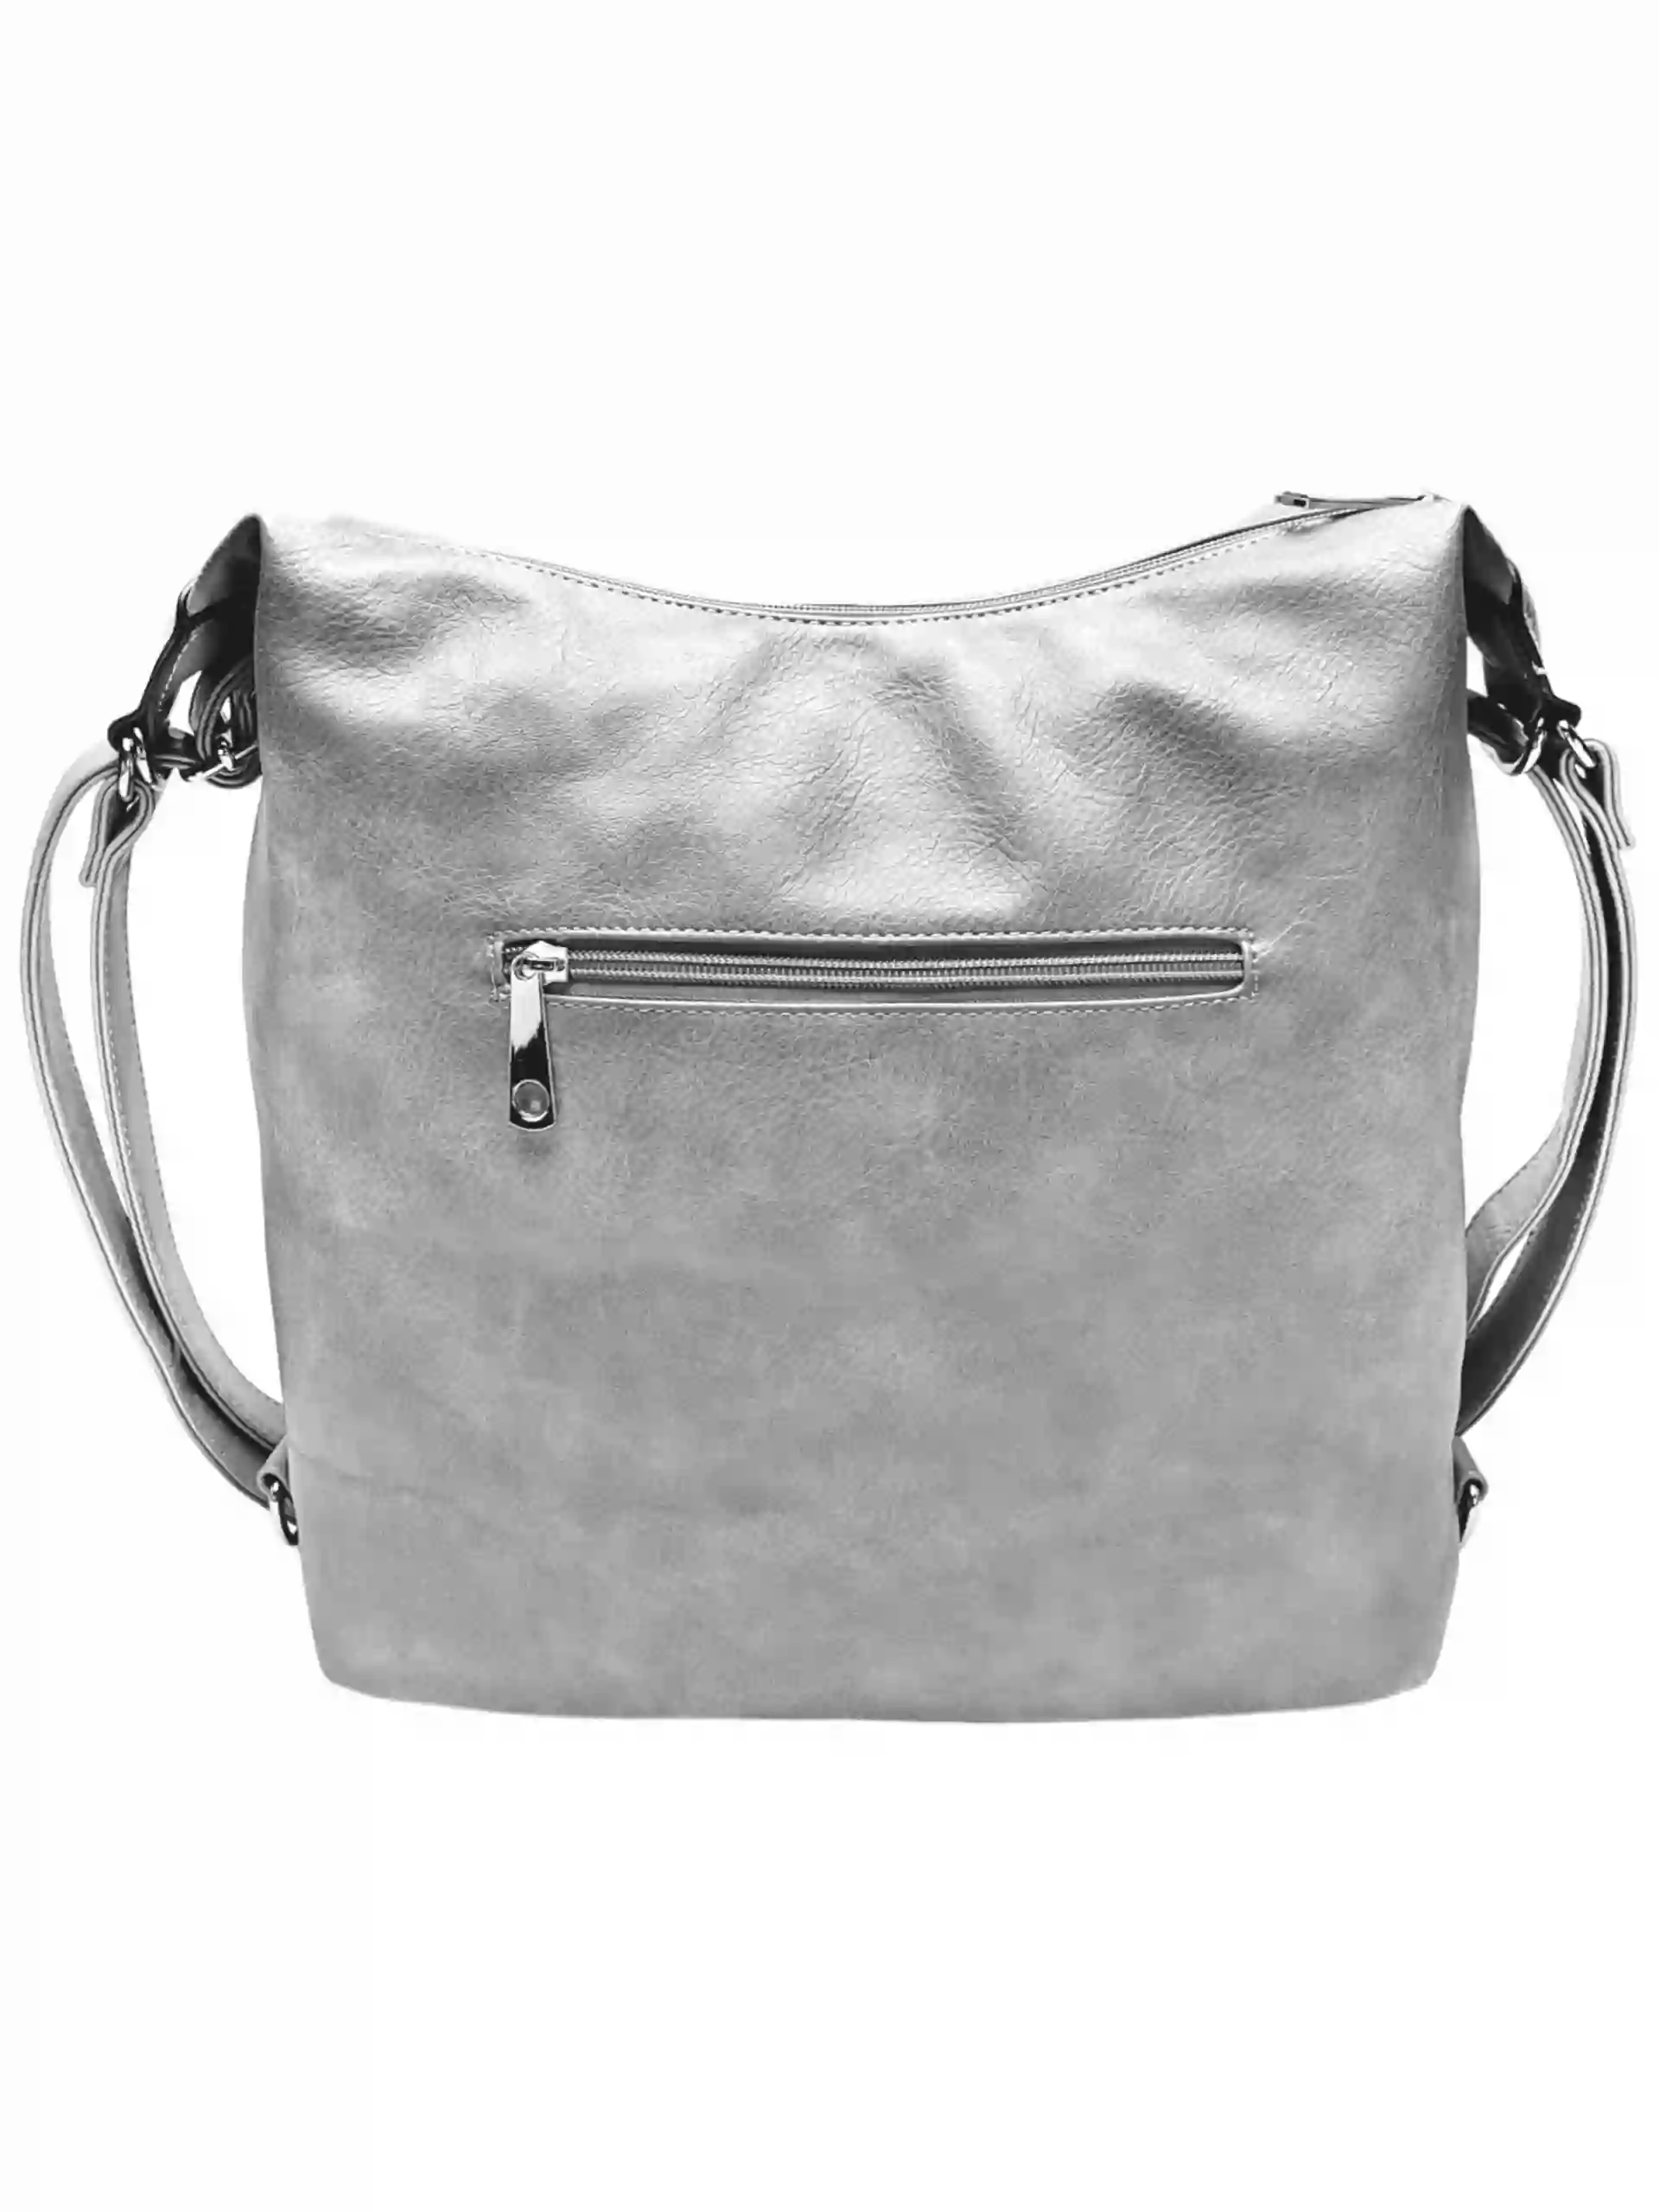 Velký světle šedý kabelko-batoh s šikmou kapsou, Tapple, H18077N+, zadní strana kabelko-batohu 2v1